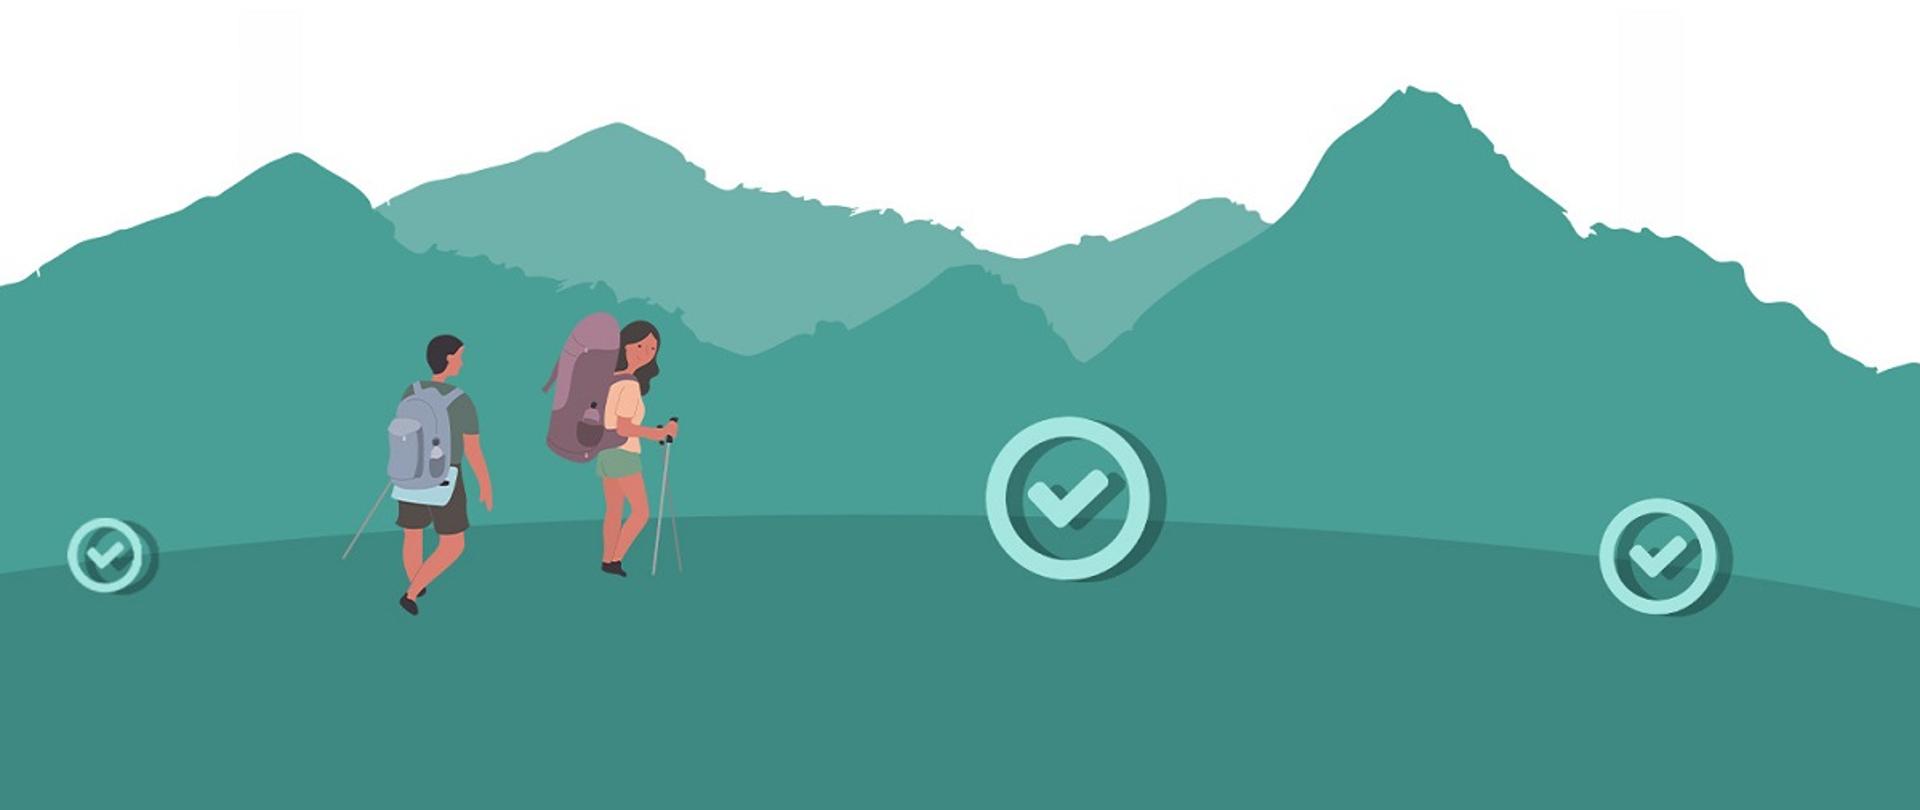 Grafika przedstawiająca turystów w górach - kobietę i mężczyznę z plecakami i kijkami w dłoniach. W tle panorama gór. 